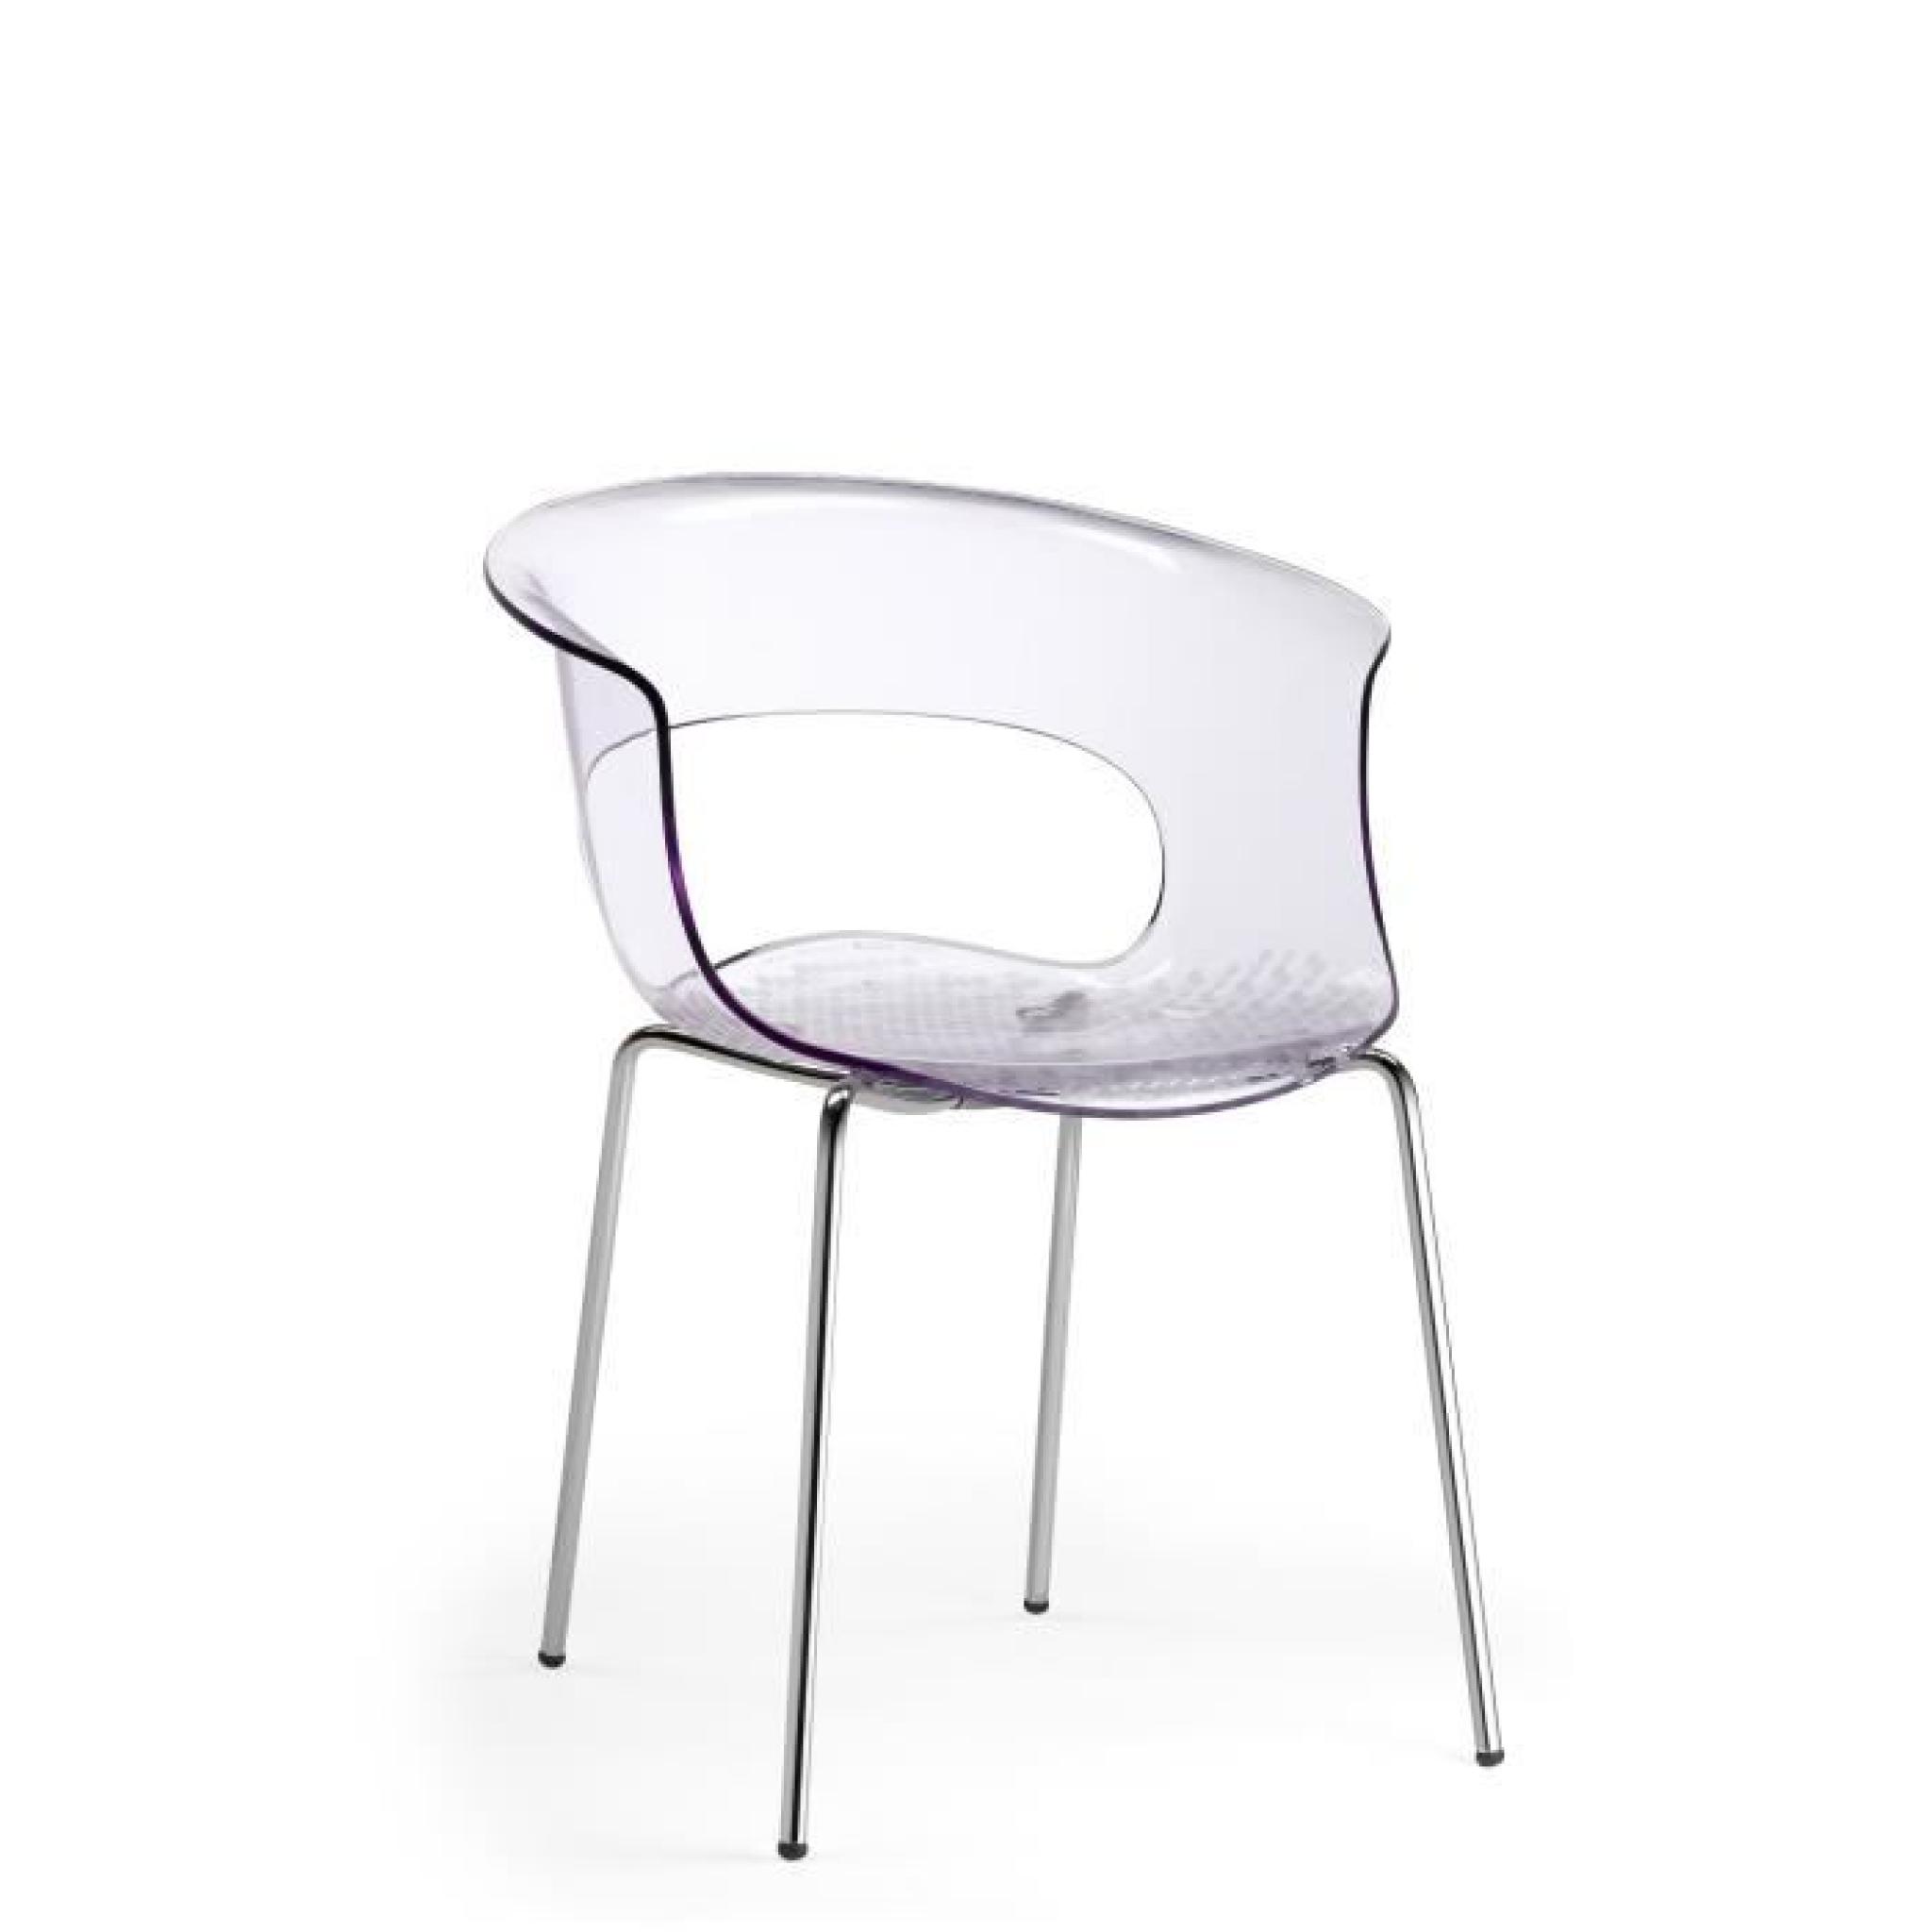 Chaise design - MISS B ANTICHOCK 4 legs - deco Transparent